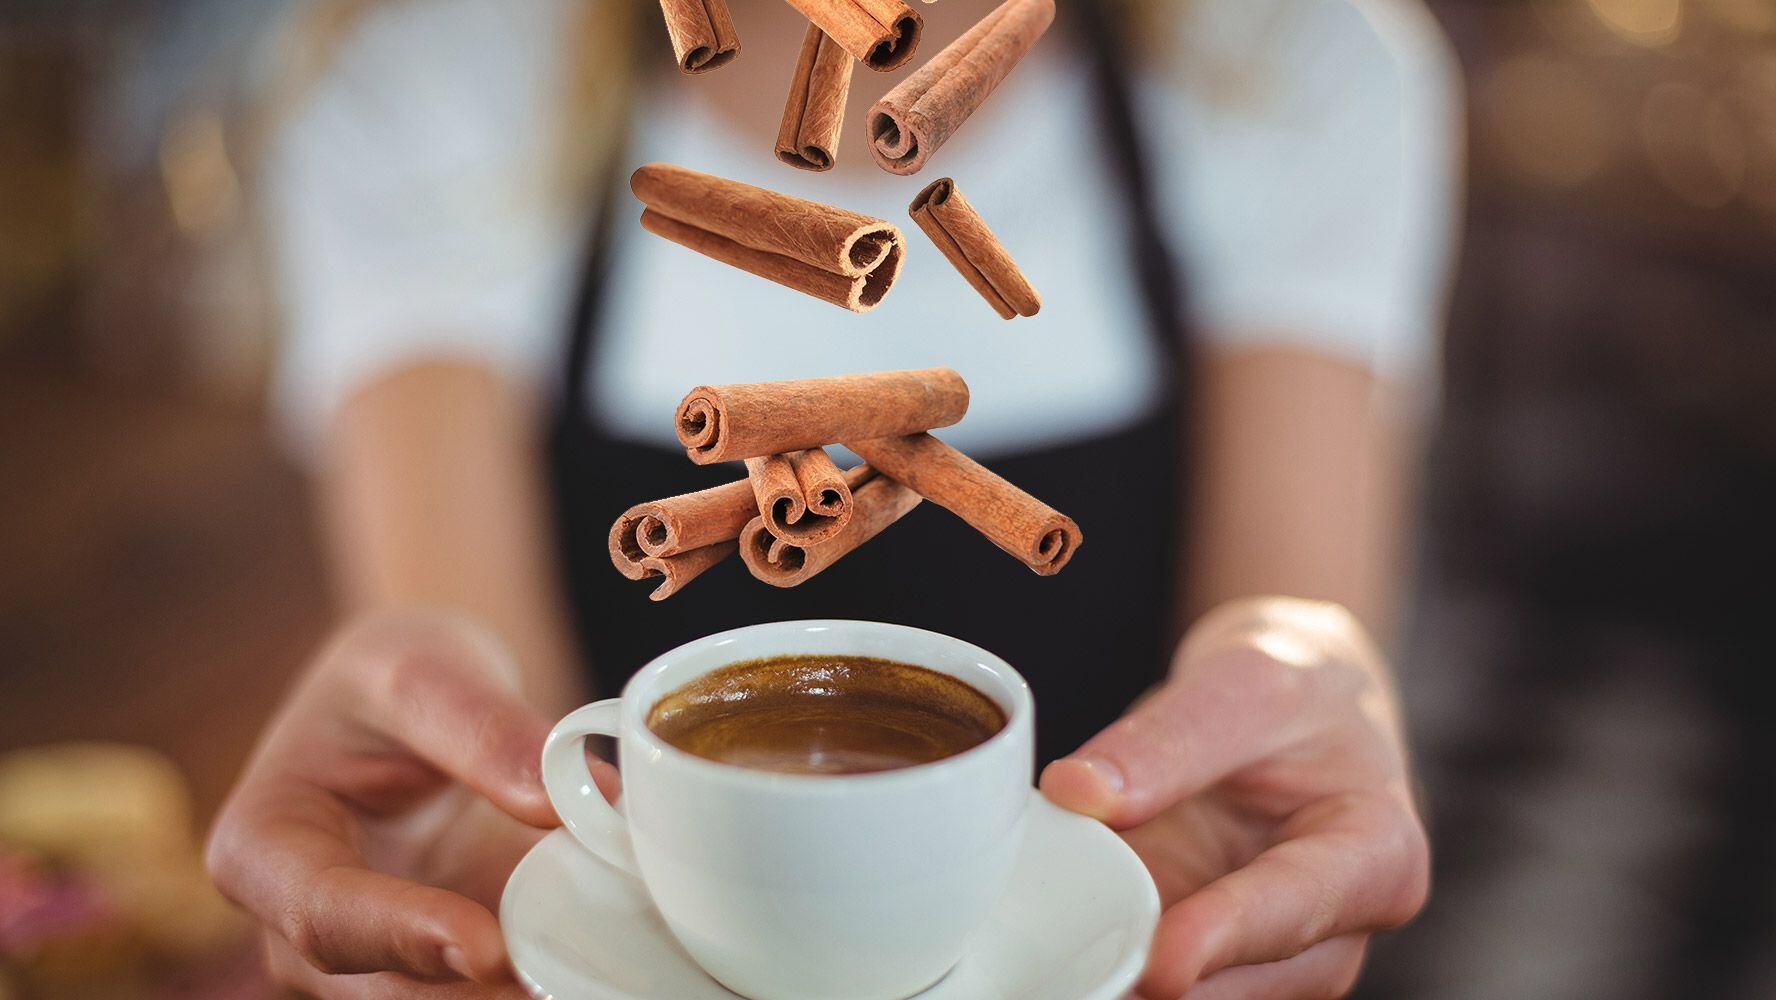 El café con canela puede ser una mezcla beneficiosa para la salud. (Foto: Especial / El Financiero).